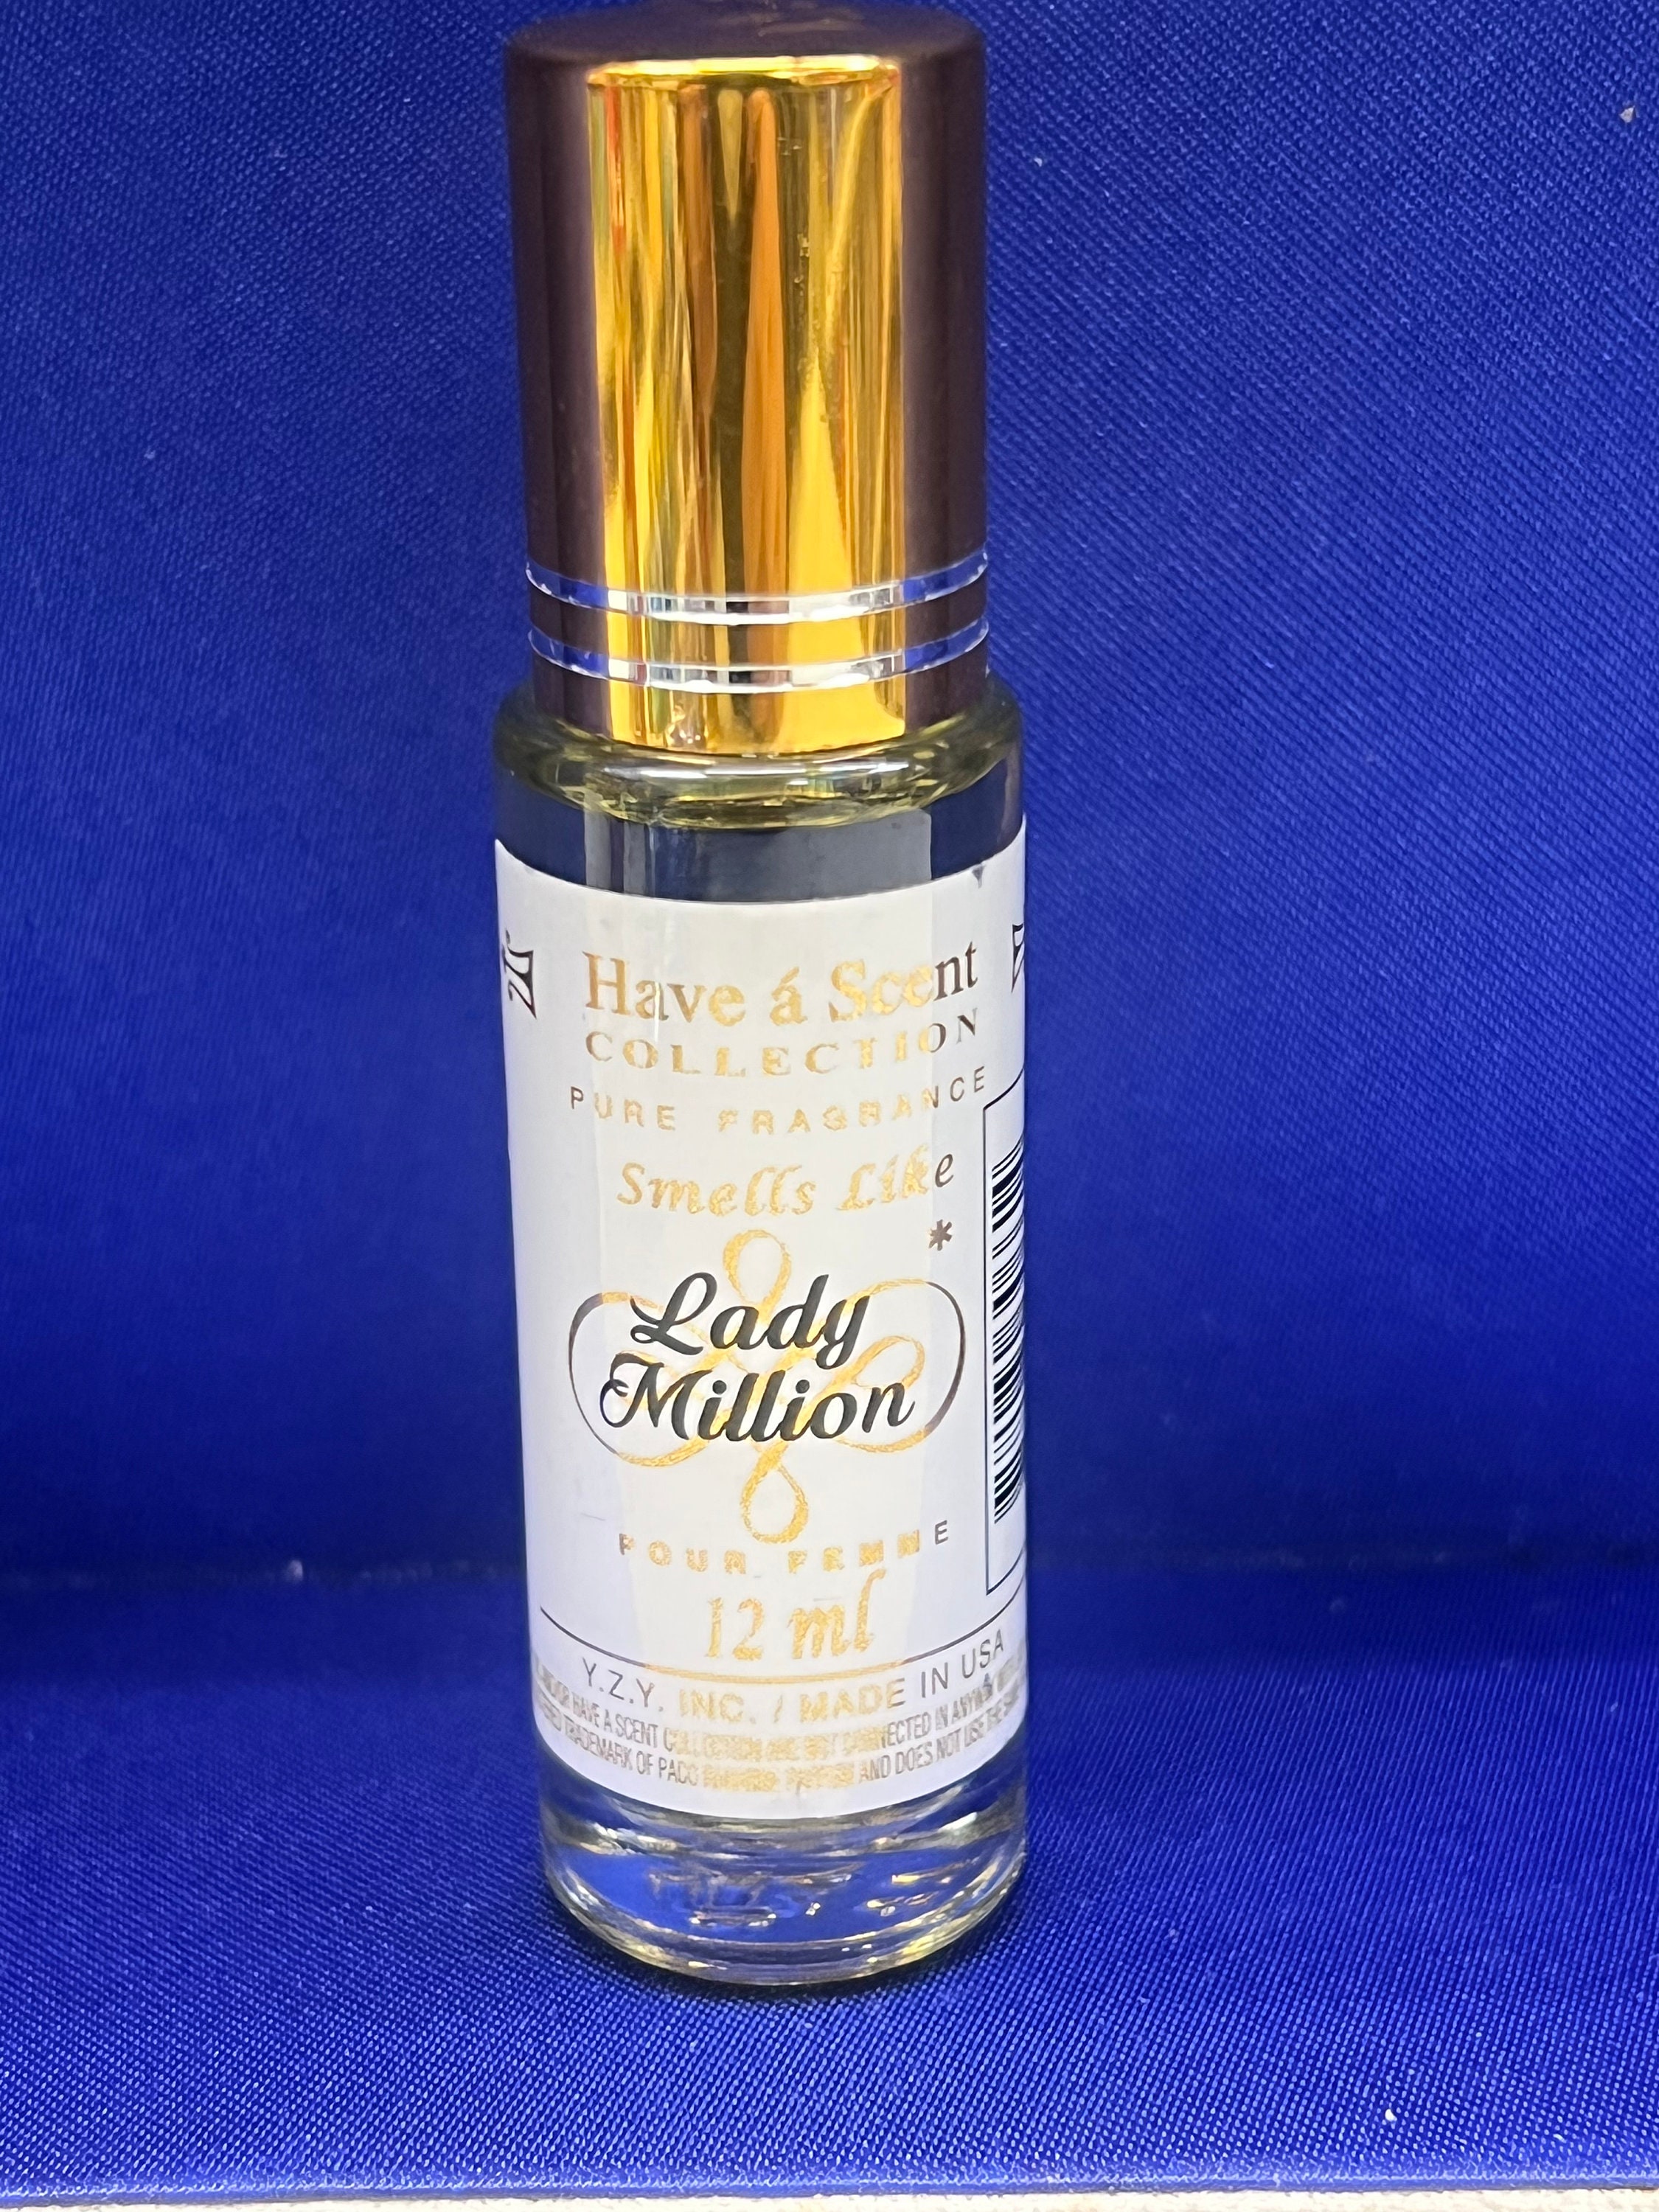 Flower Bomb Roll-On Oil Perfume For Women 12ml Pure Fragrance Oil